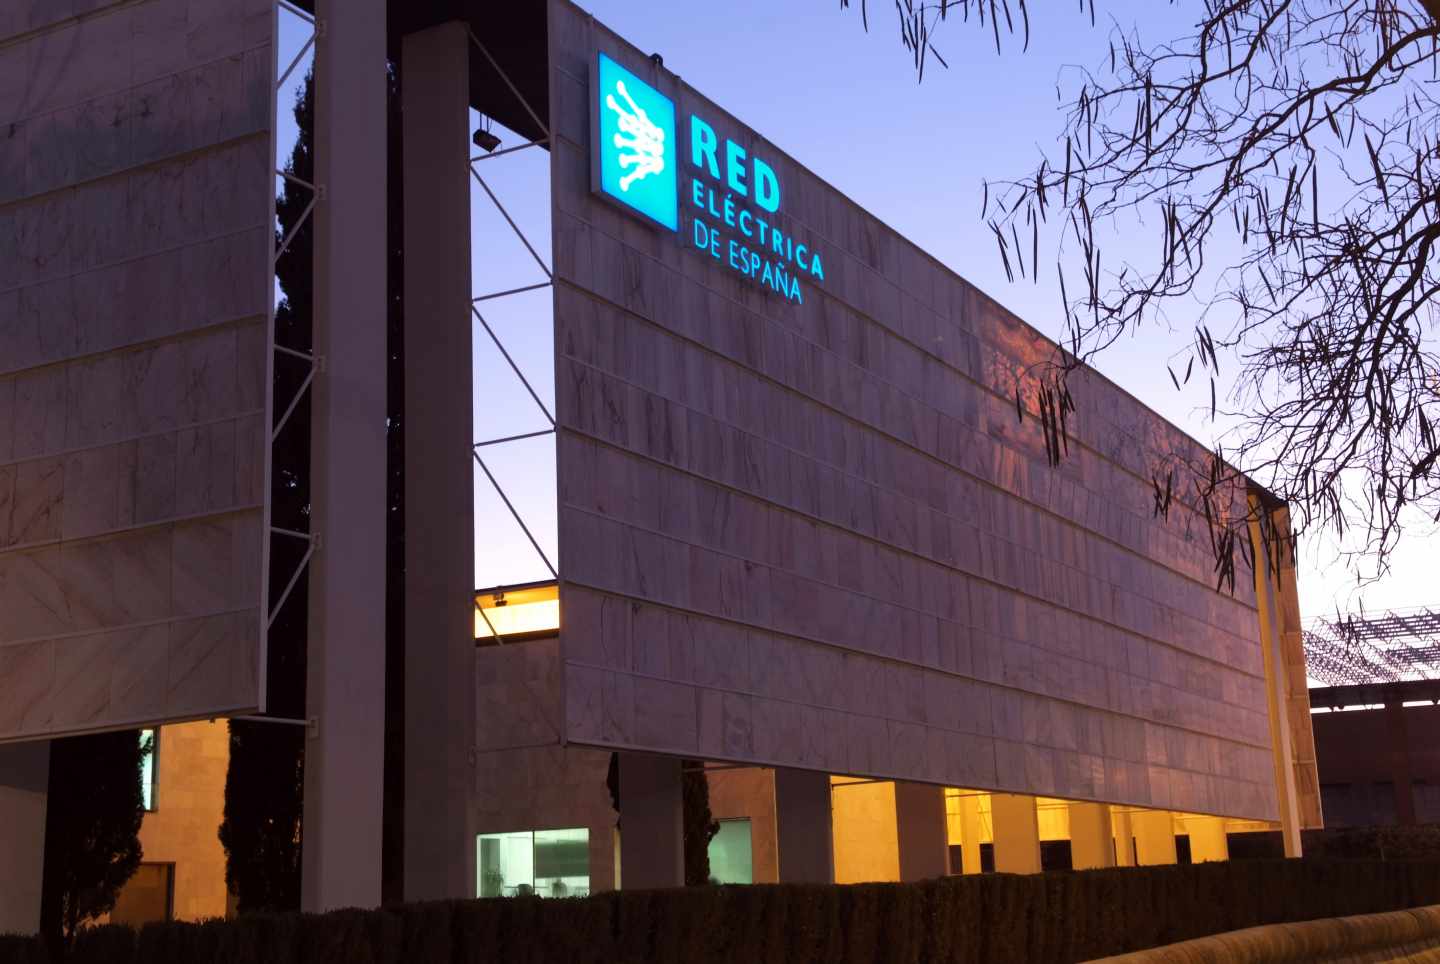 Oficinas de Red Eléctrica en Sevilla.